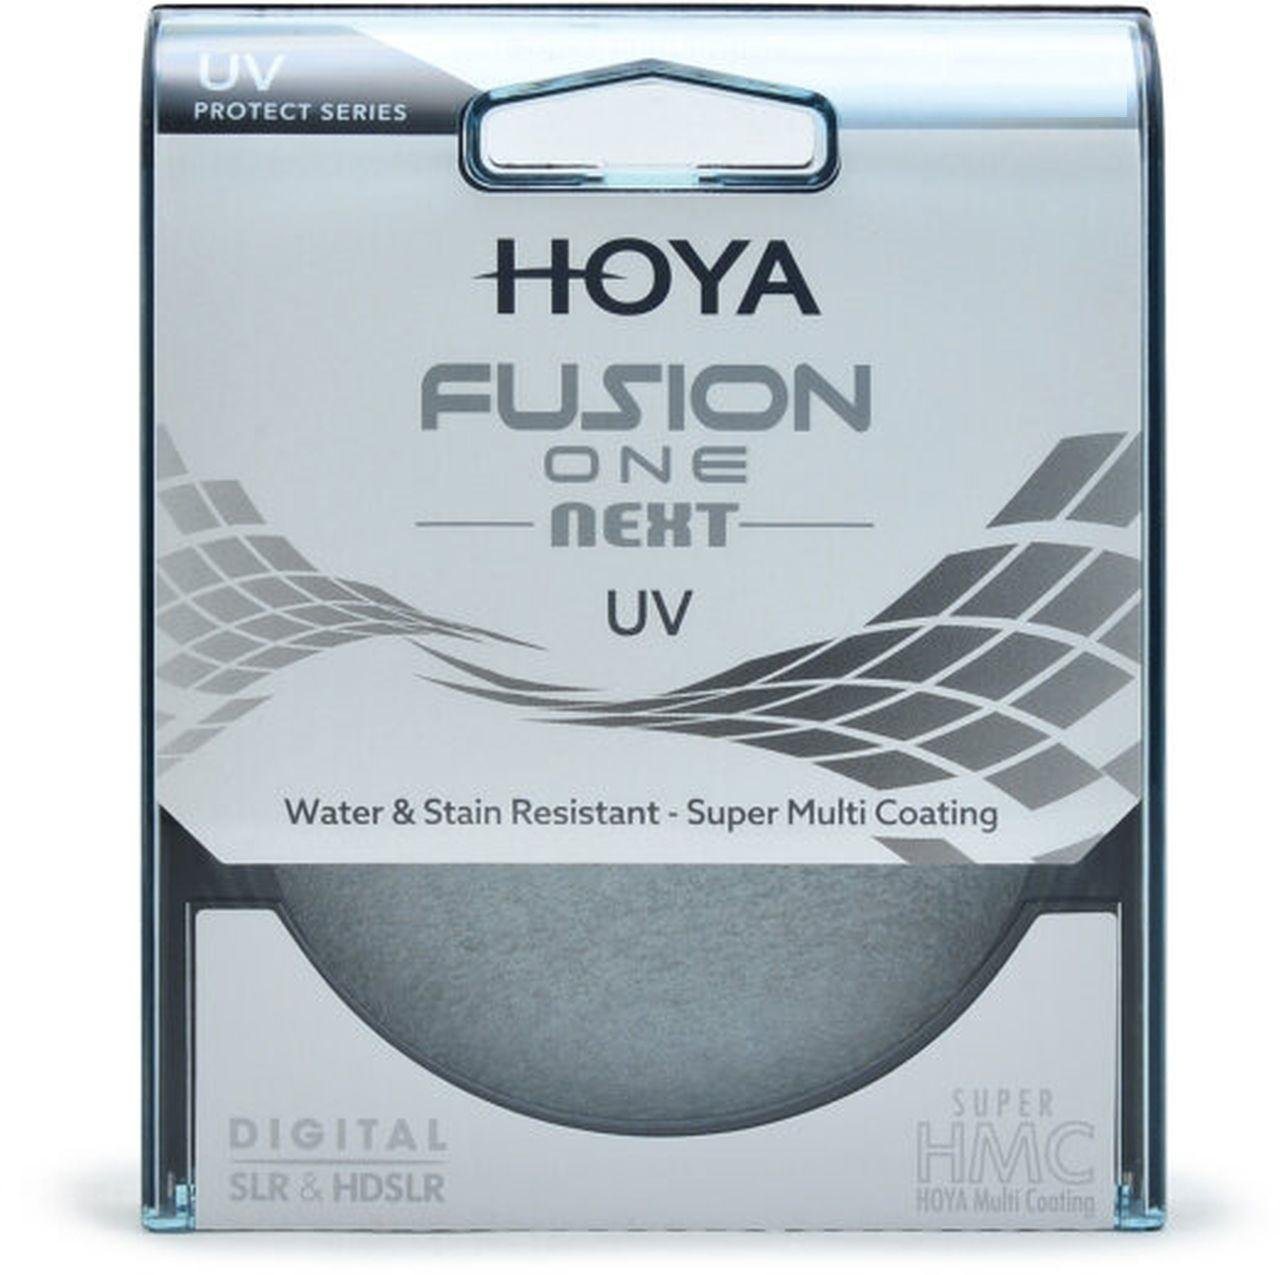 Hoya Fusion ONE Next UV-Filter 55mm Objektivzubehör von Hoya